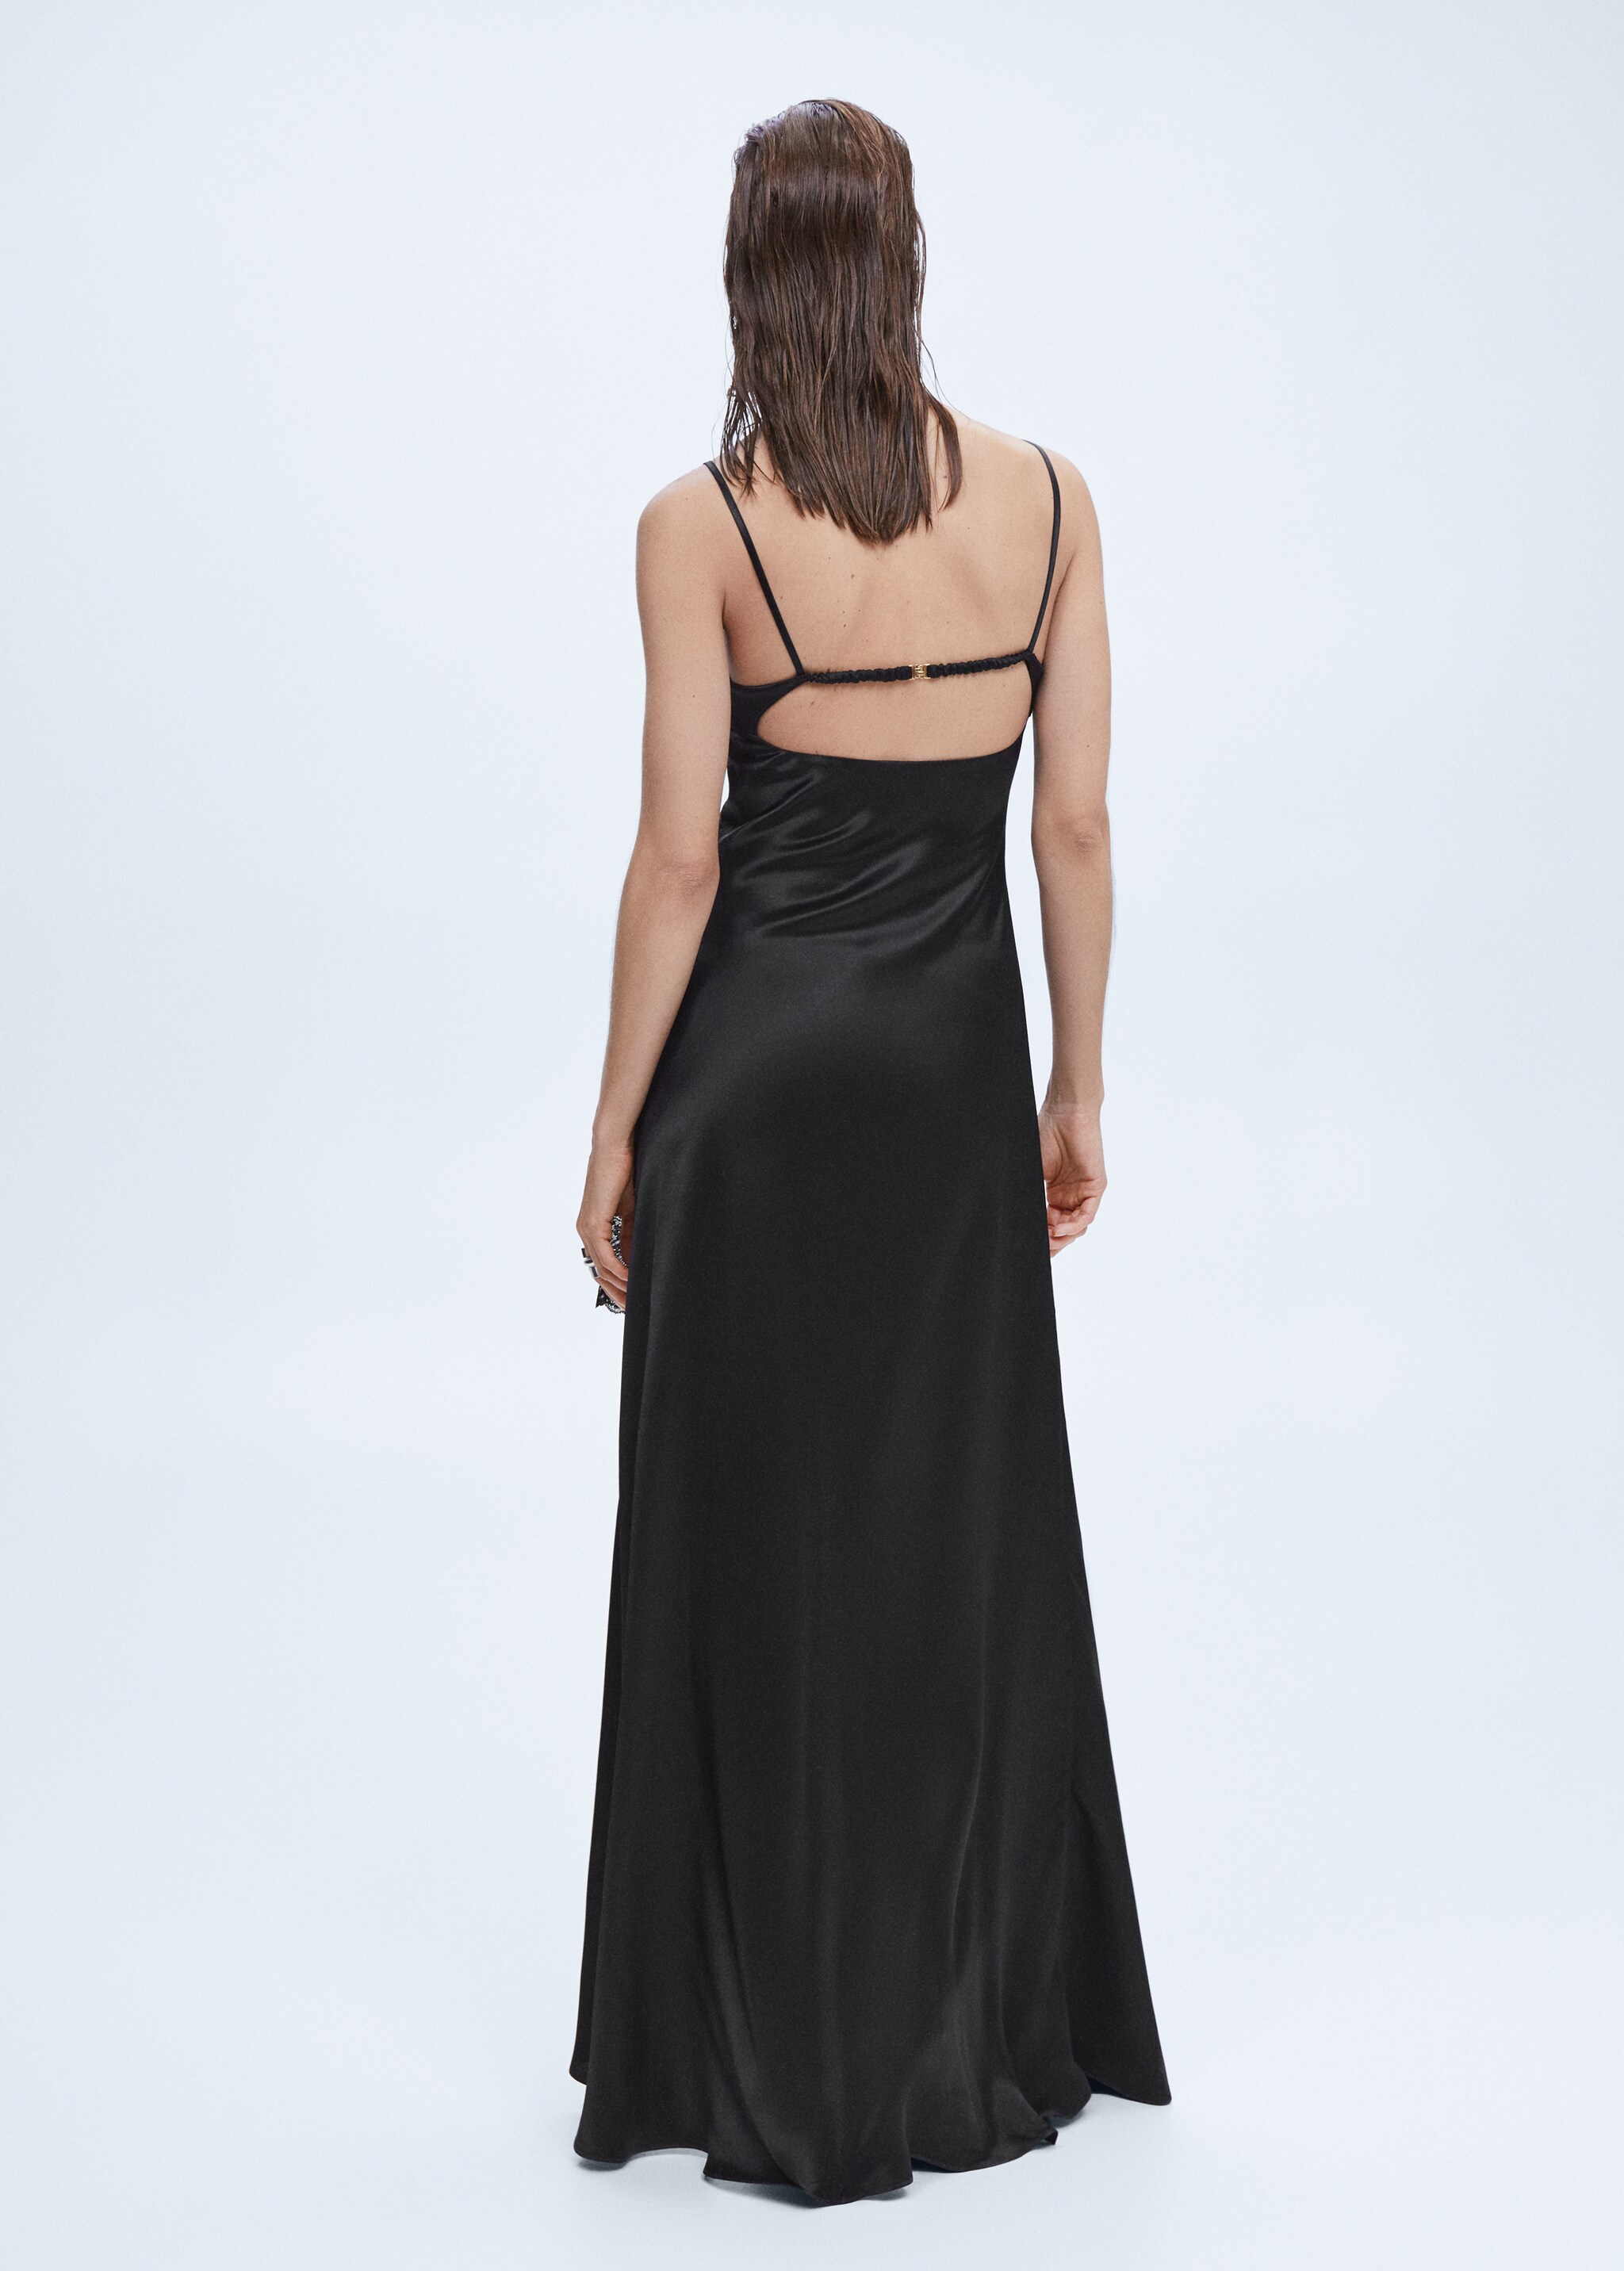 Satiniertes Kleid mit Korsett-Ausschnitt - Rückseite des Artikels